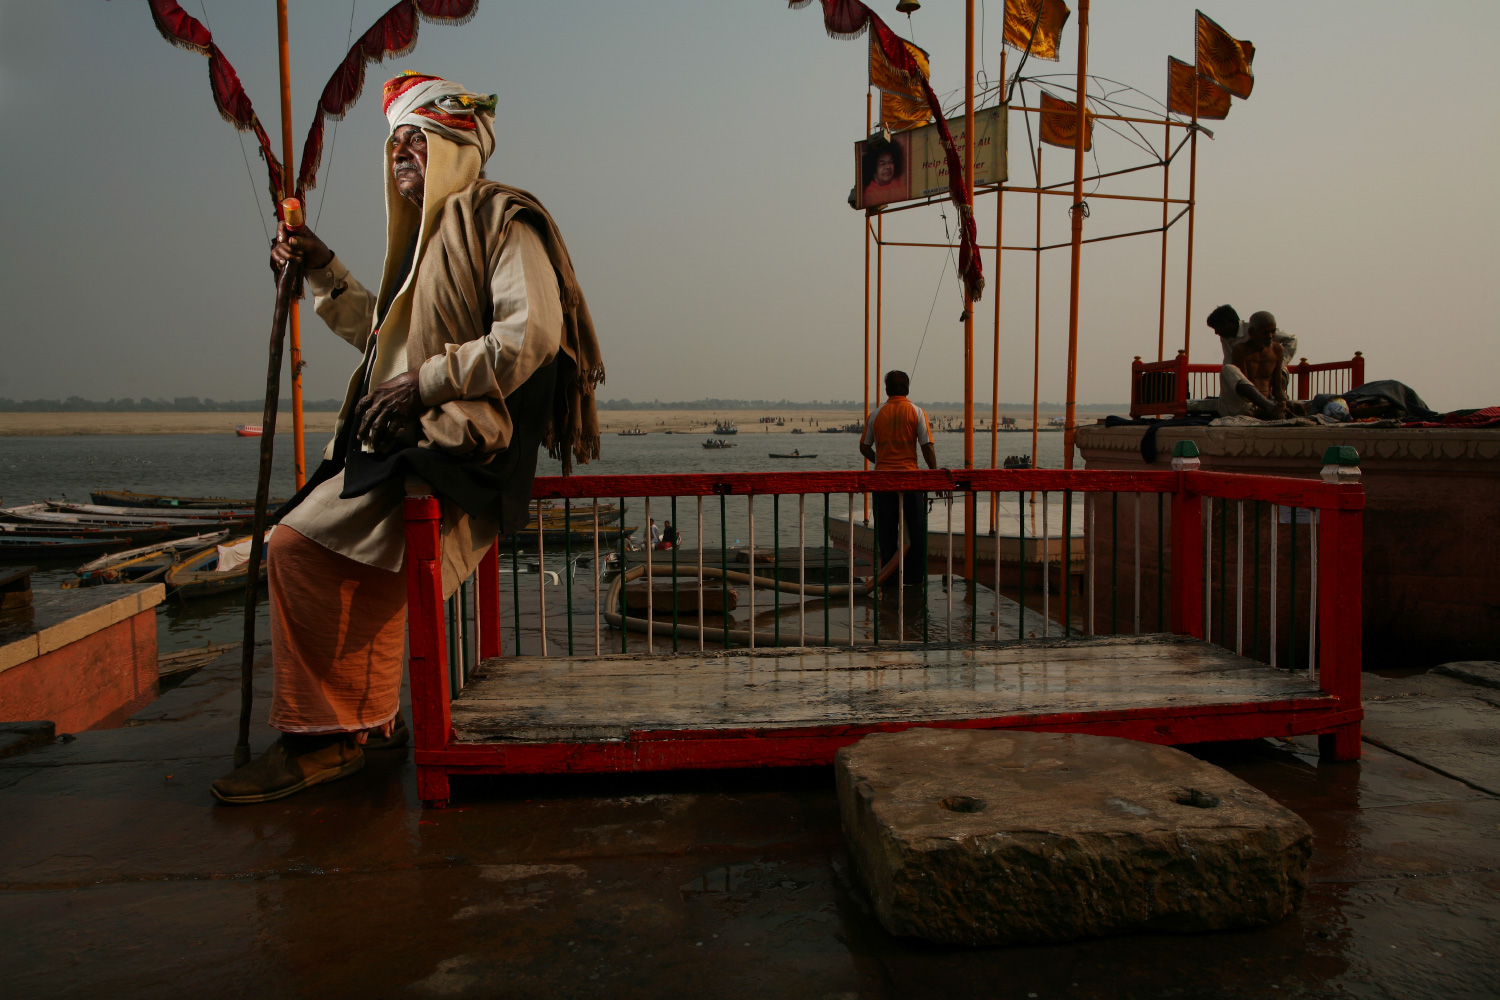 Varanasi Holy Man